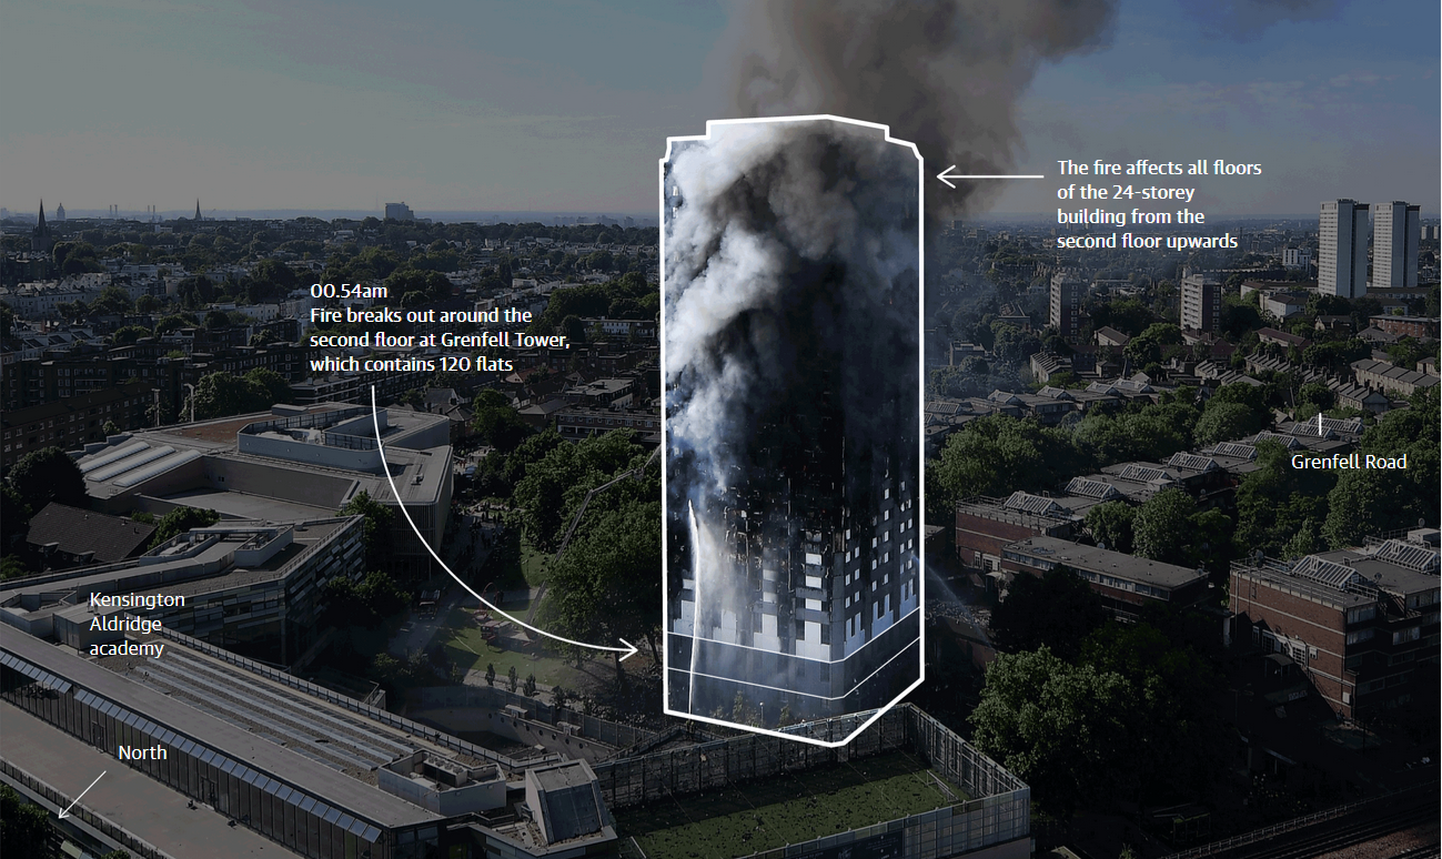 Briti päevalehe The Guardian tehtud jooniselt on näha, kuidas tulekahju levis.